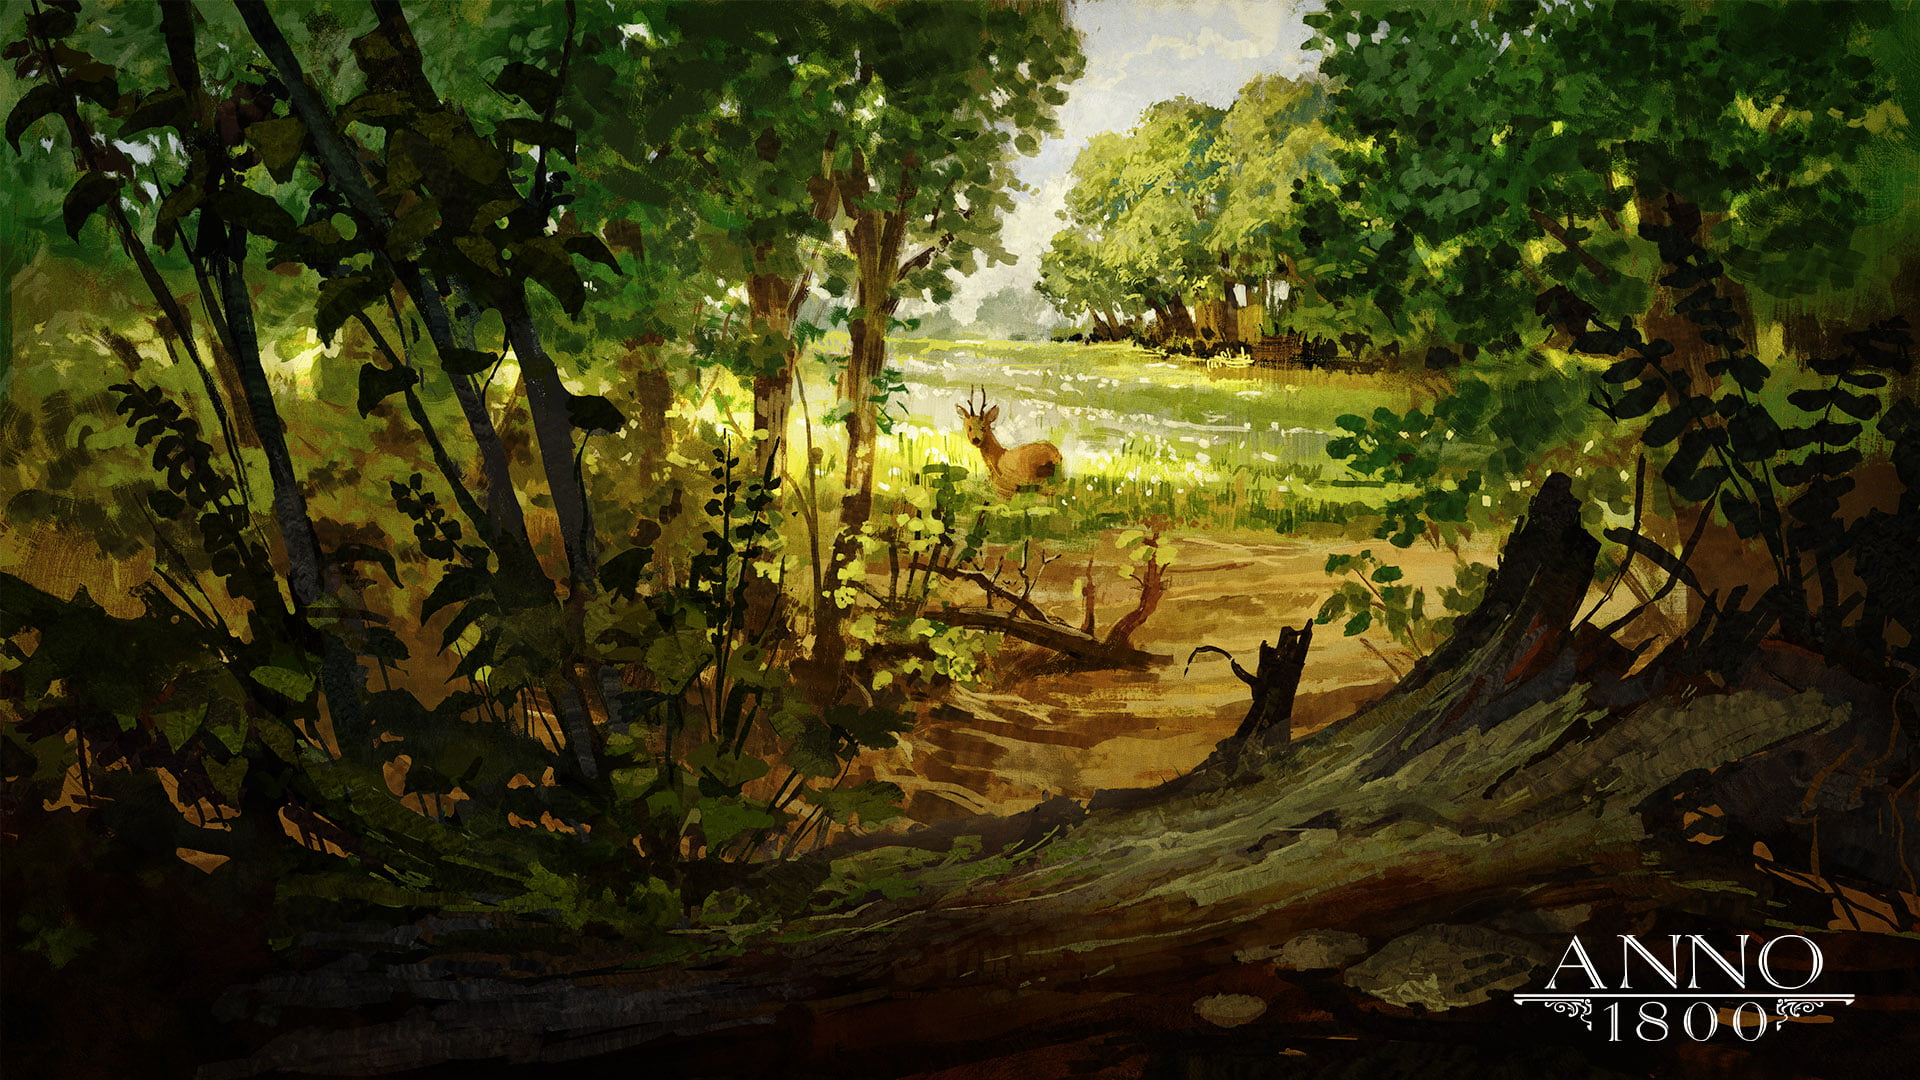 Anno 1800, artwork, Ubisoft, video games, forest, deer, trees